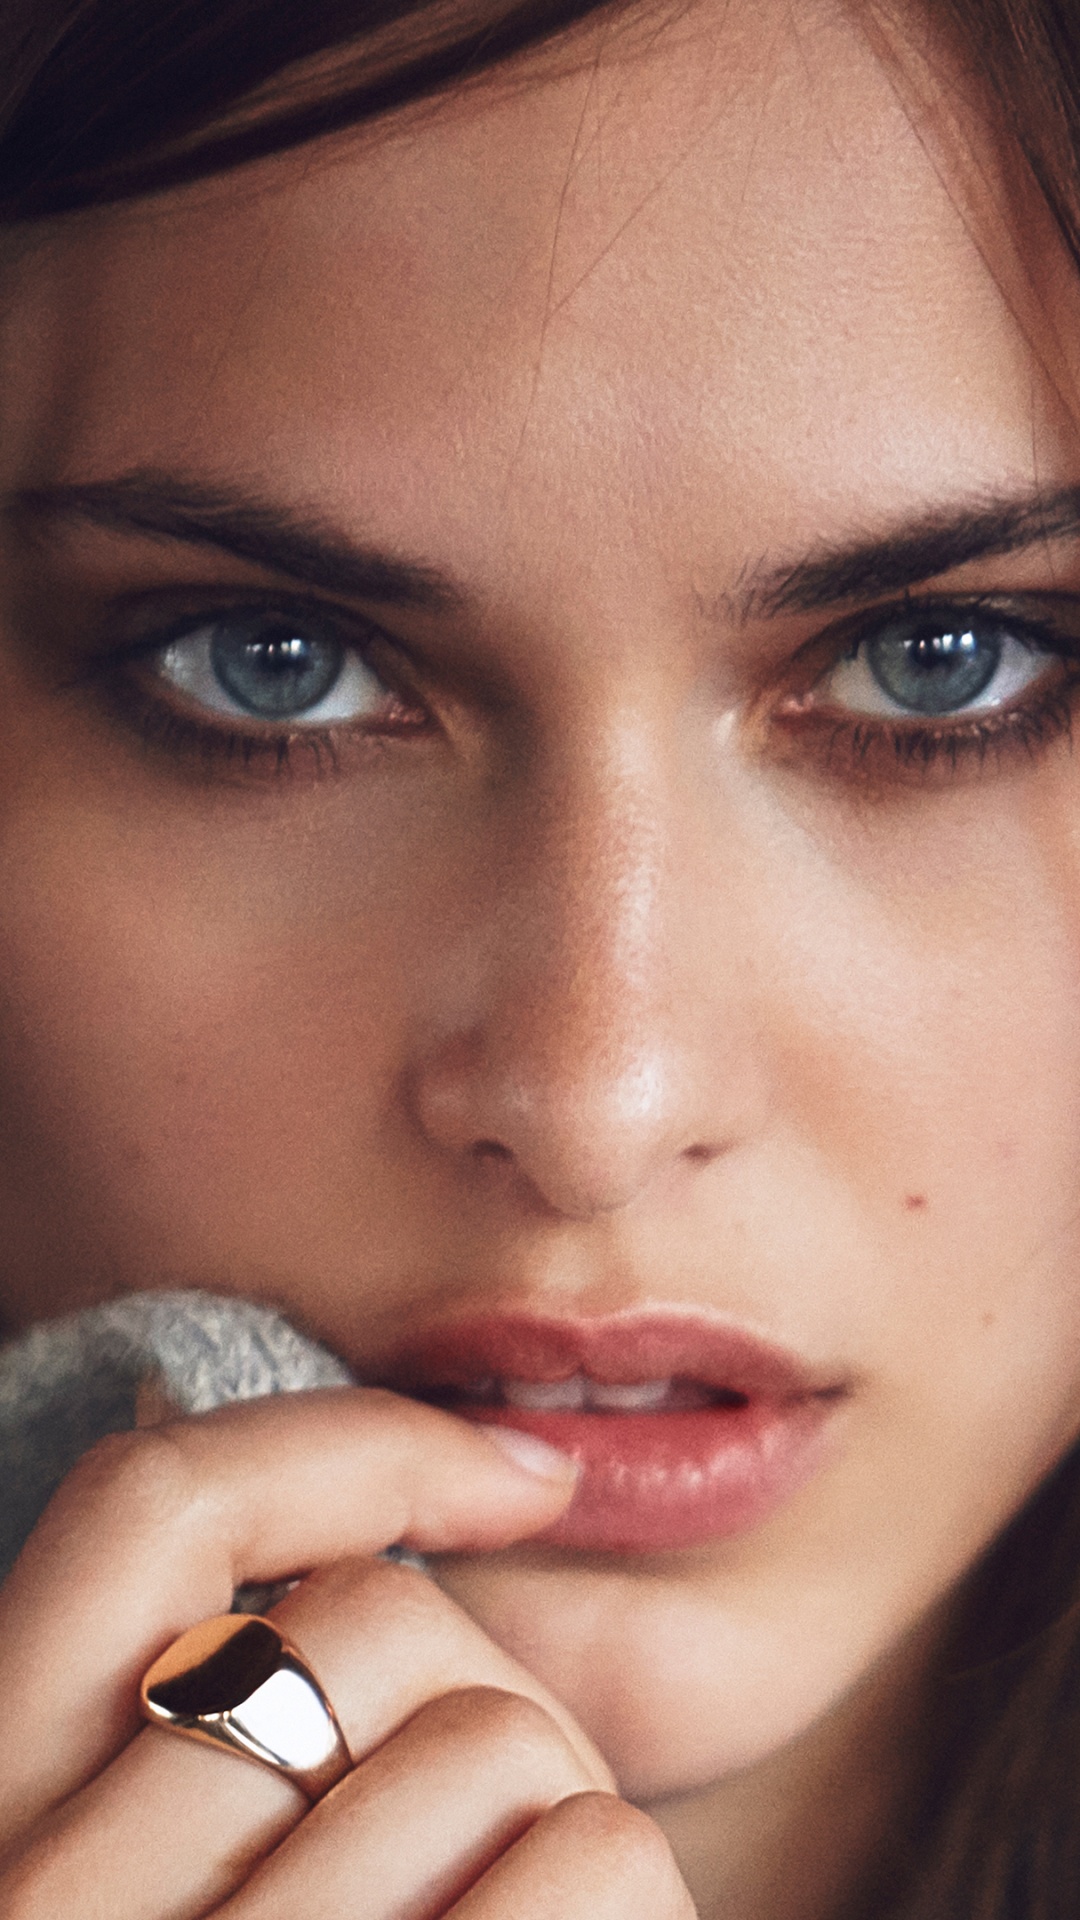 Lana Zakocela, Model, Face, Hair, Lip. Wallpaper in 1080x1920 Resolution